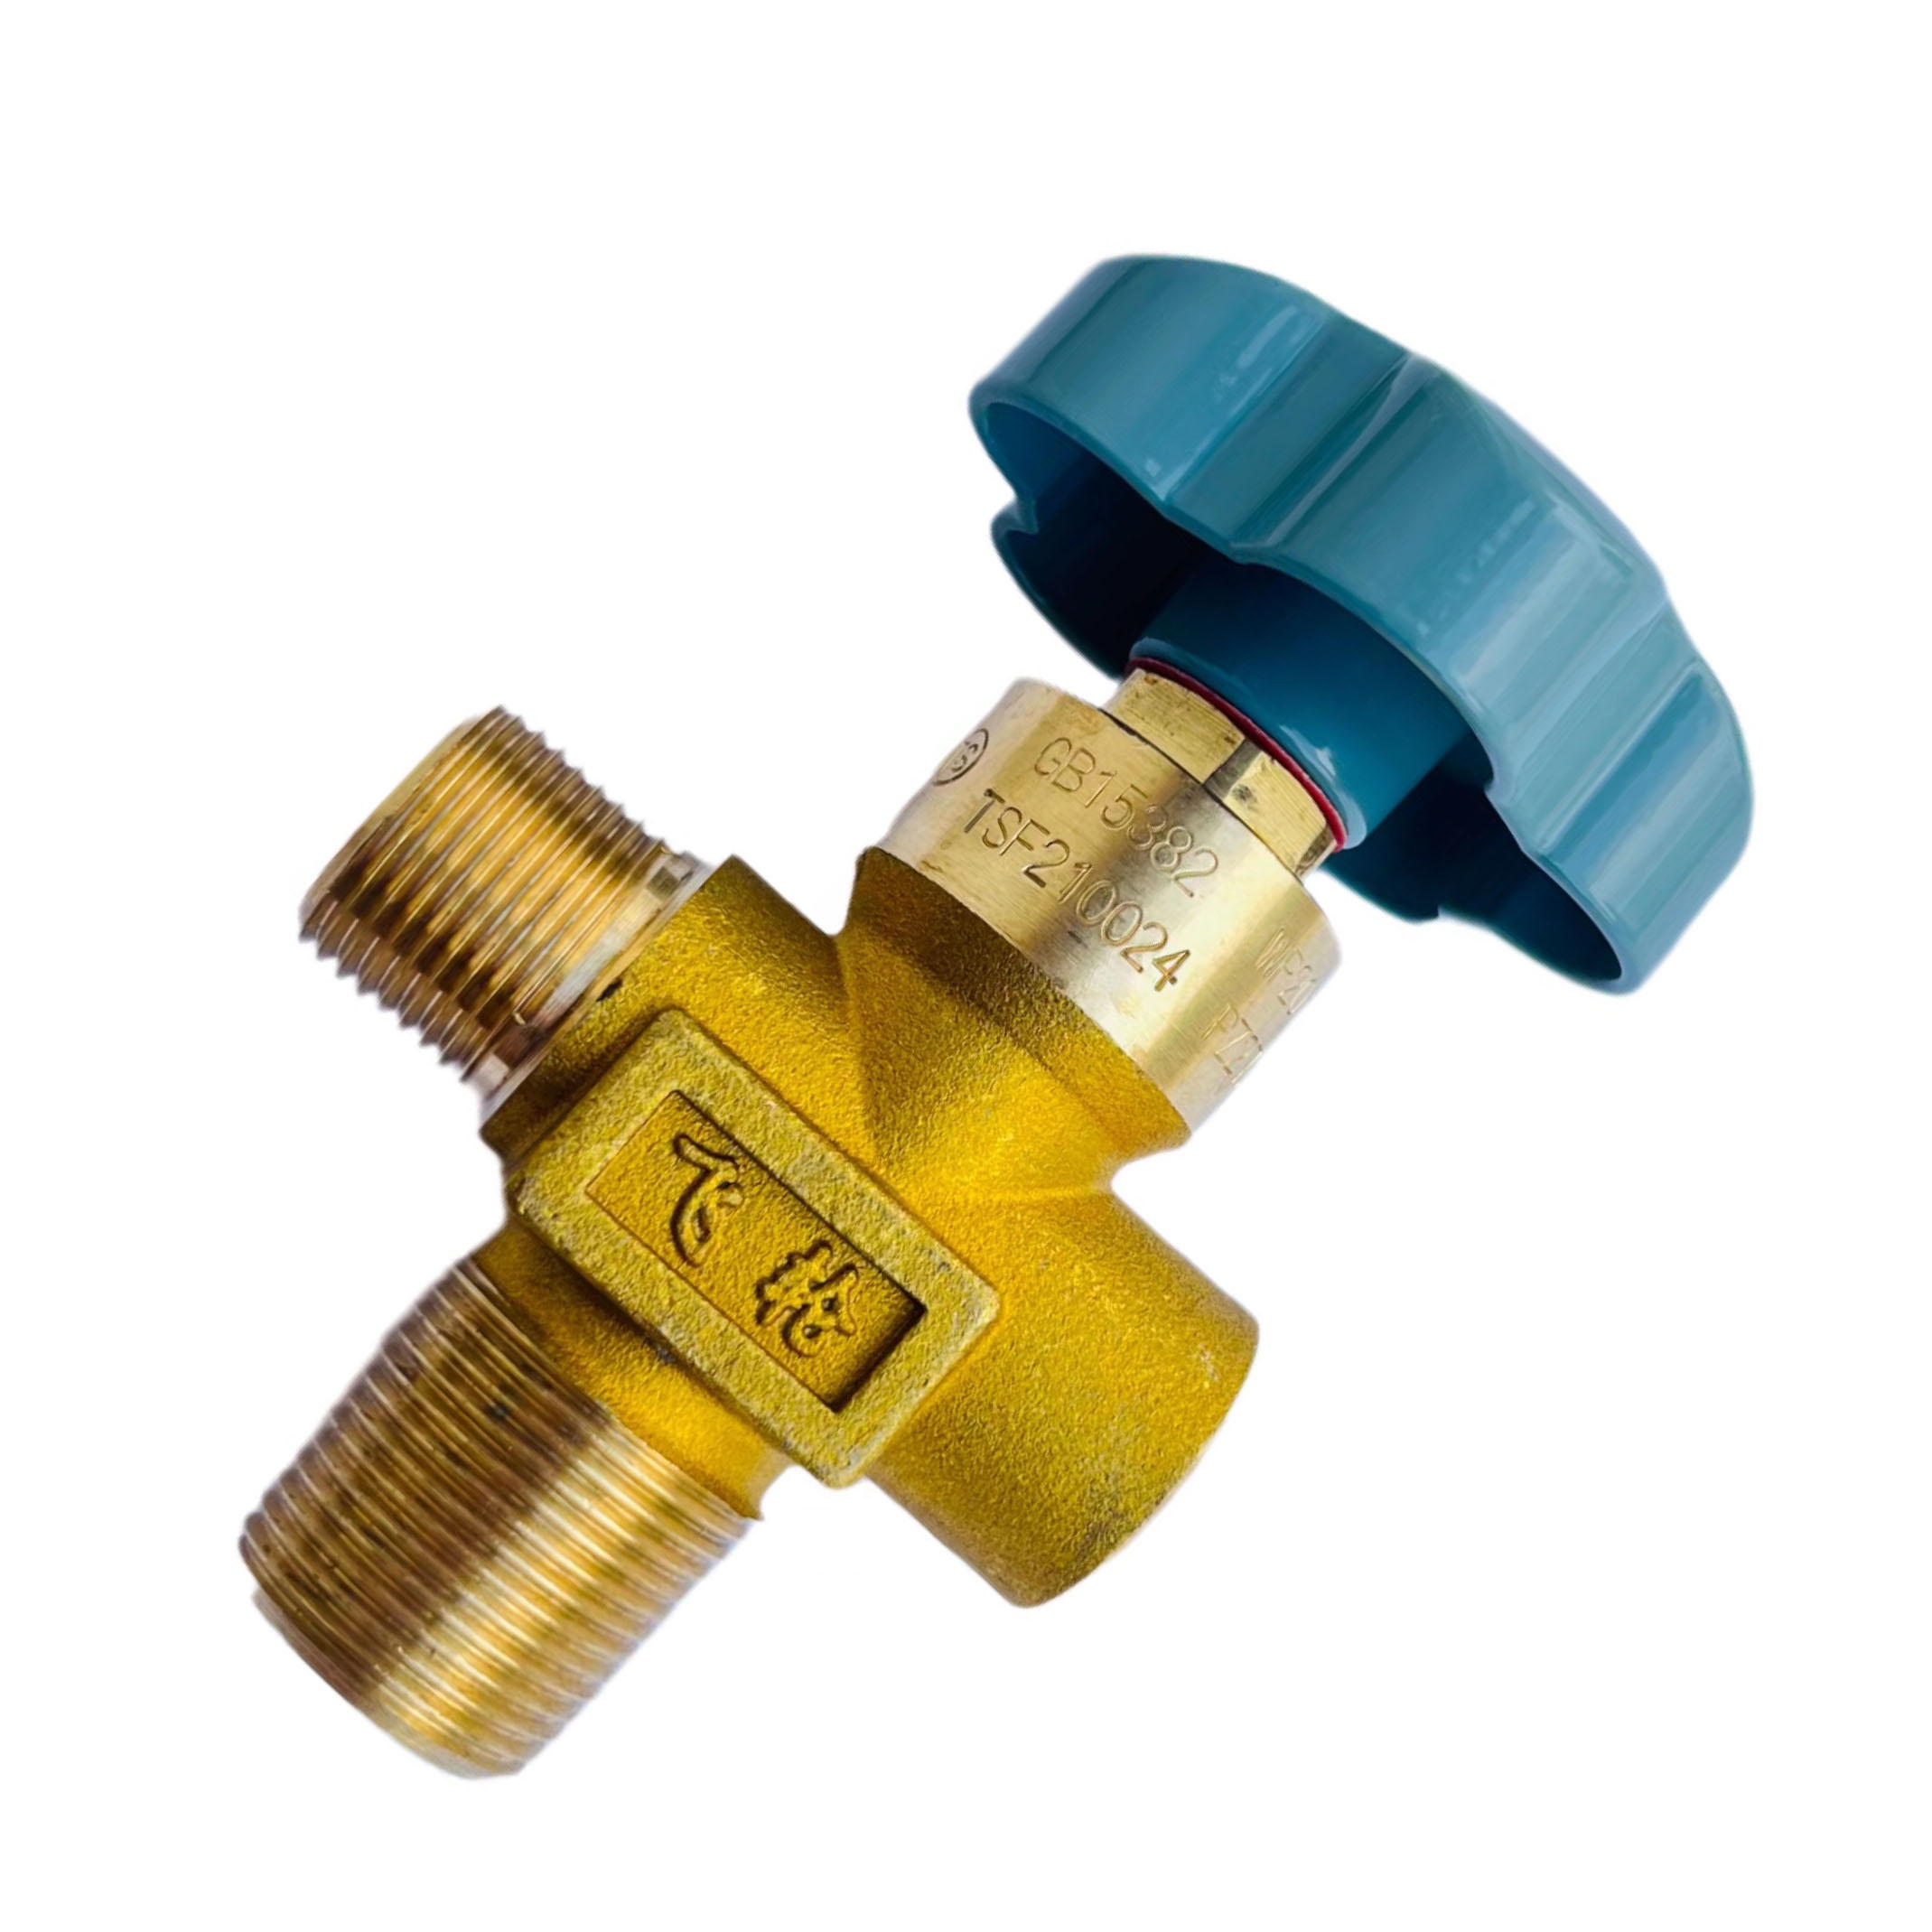 Válvula de pressão residual do cilindro de oxigênio BYF-3 para função de retenção de pressão